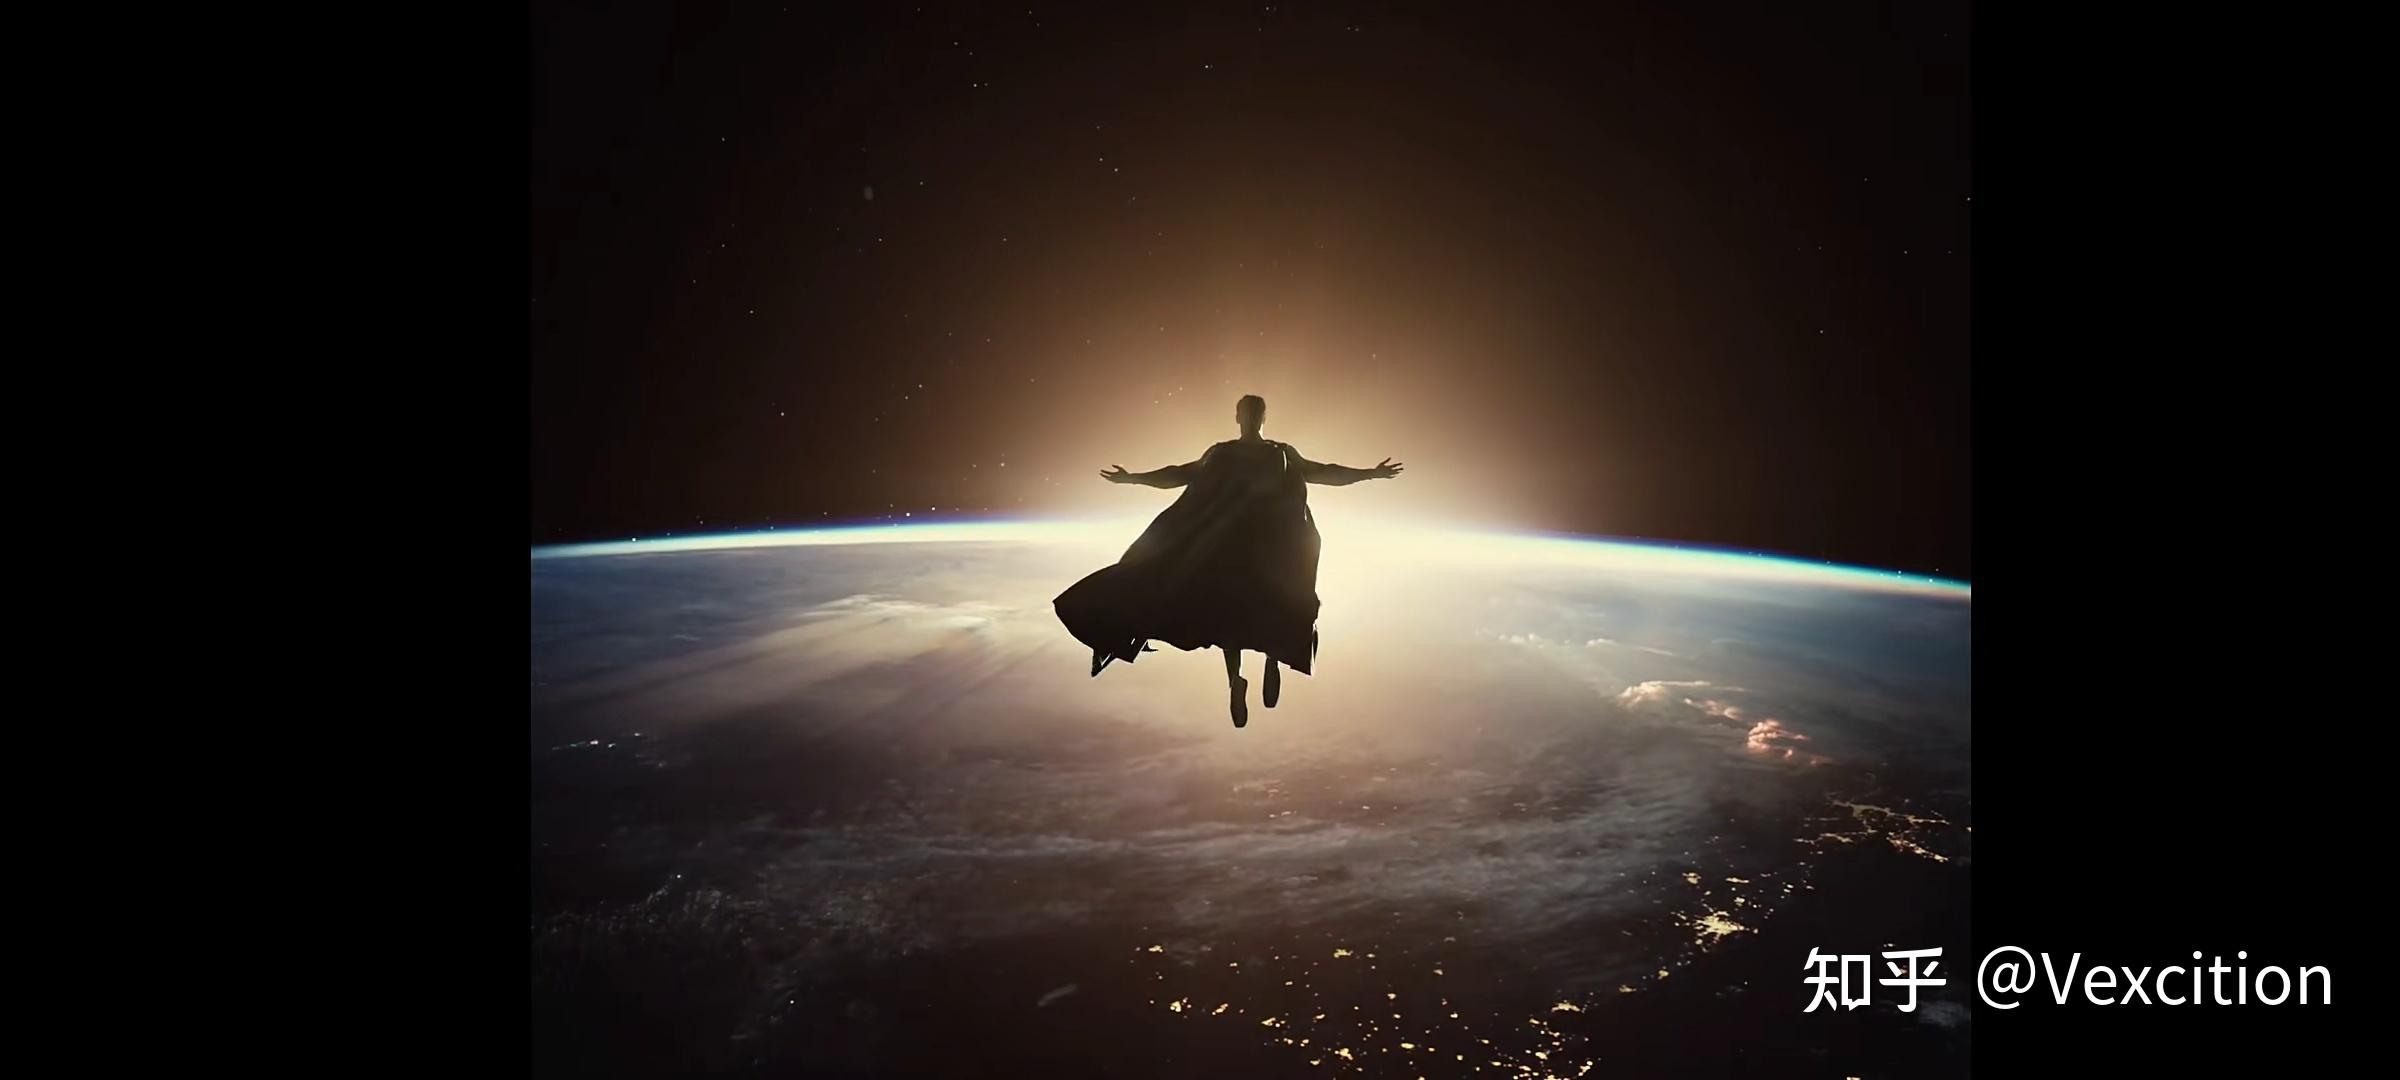 有没有正义联盟超人复活后飞向宇宙面向太阳的壁纸呀